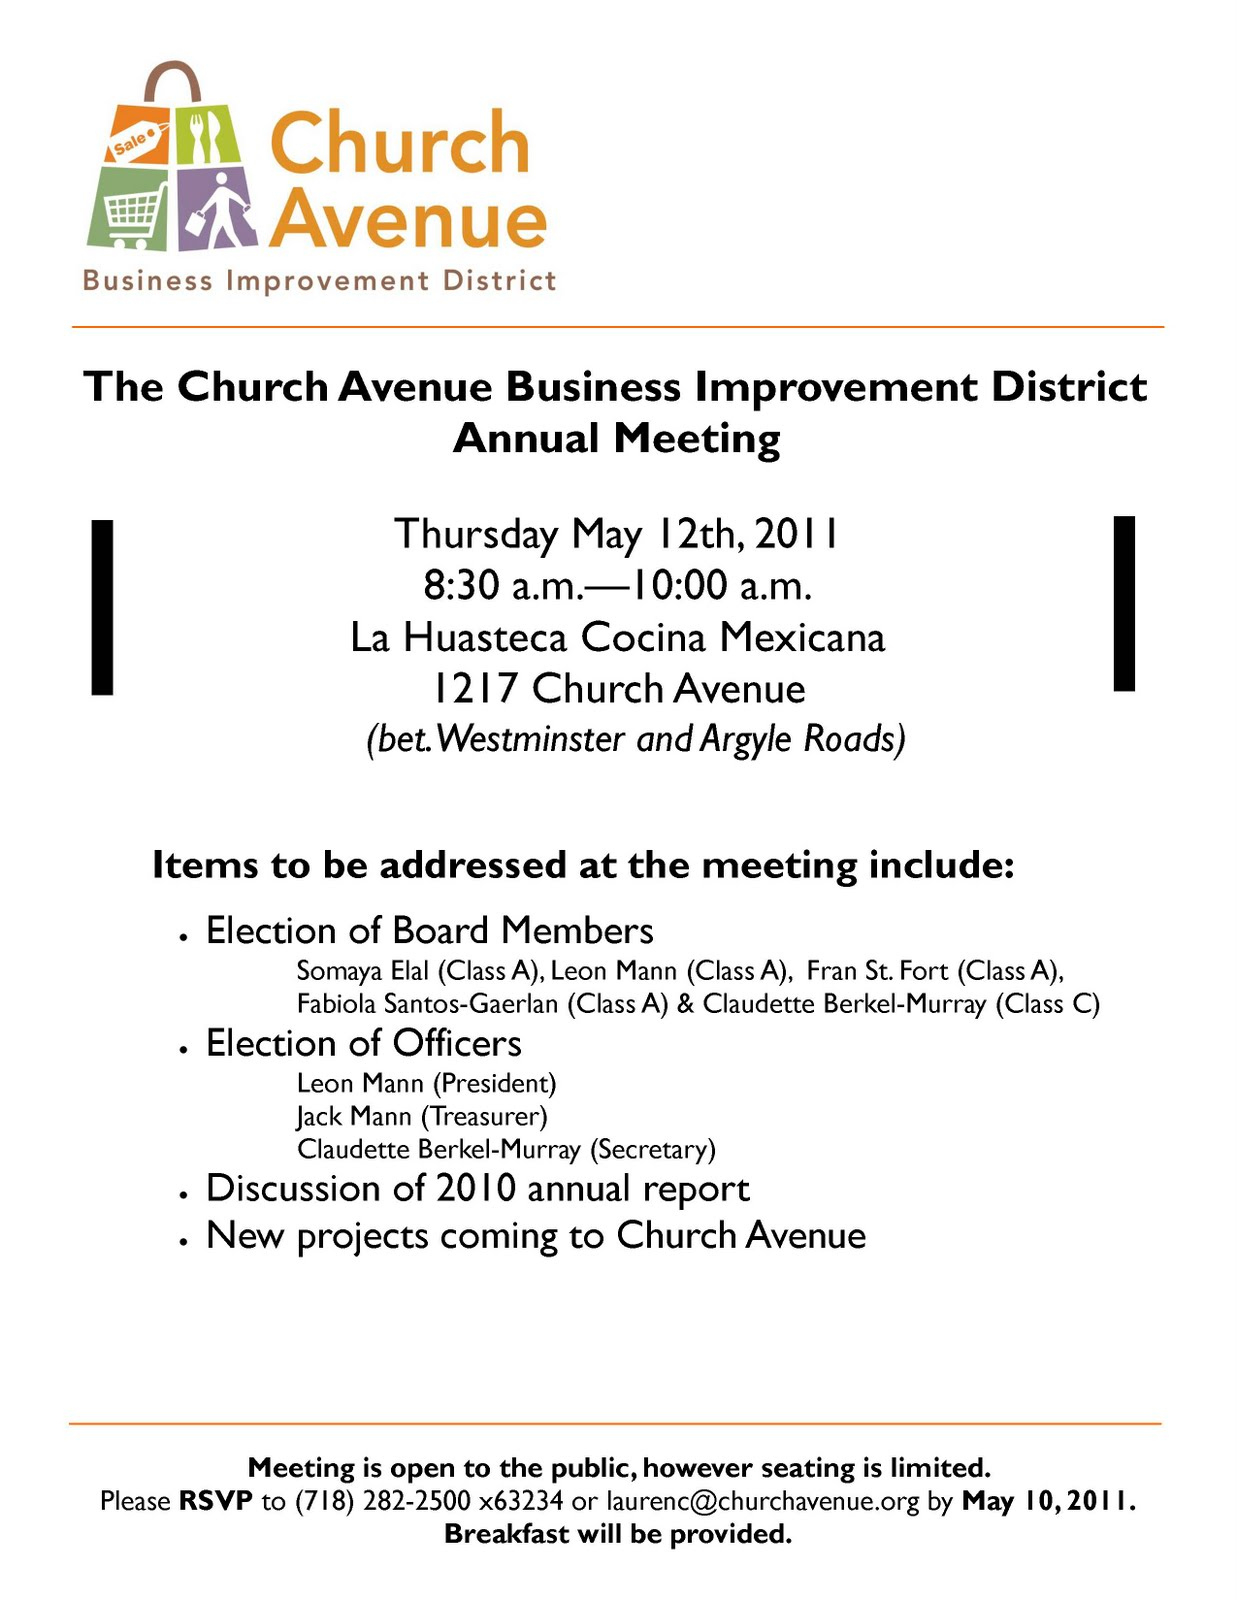 Karmabrooklyn Blog: Church Avenue Bid Annual Meeting Next For New Agenda For Church Business Meeting